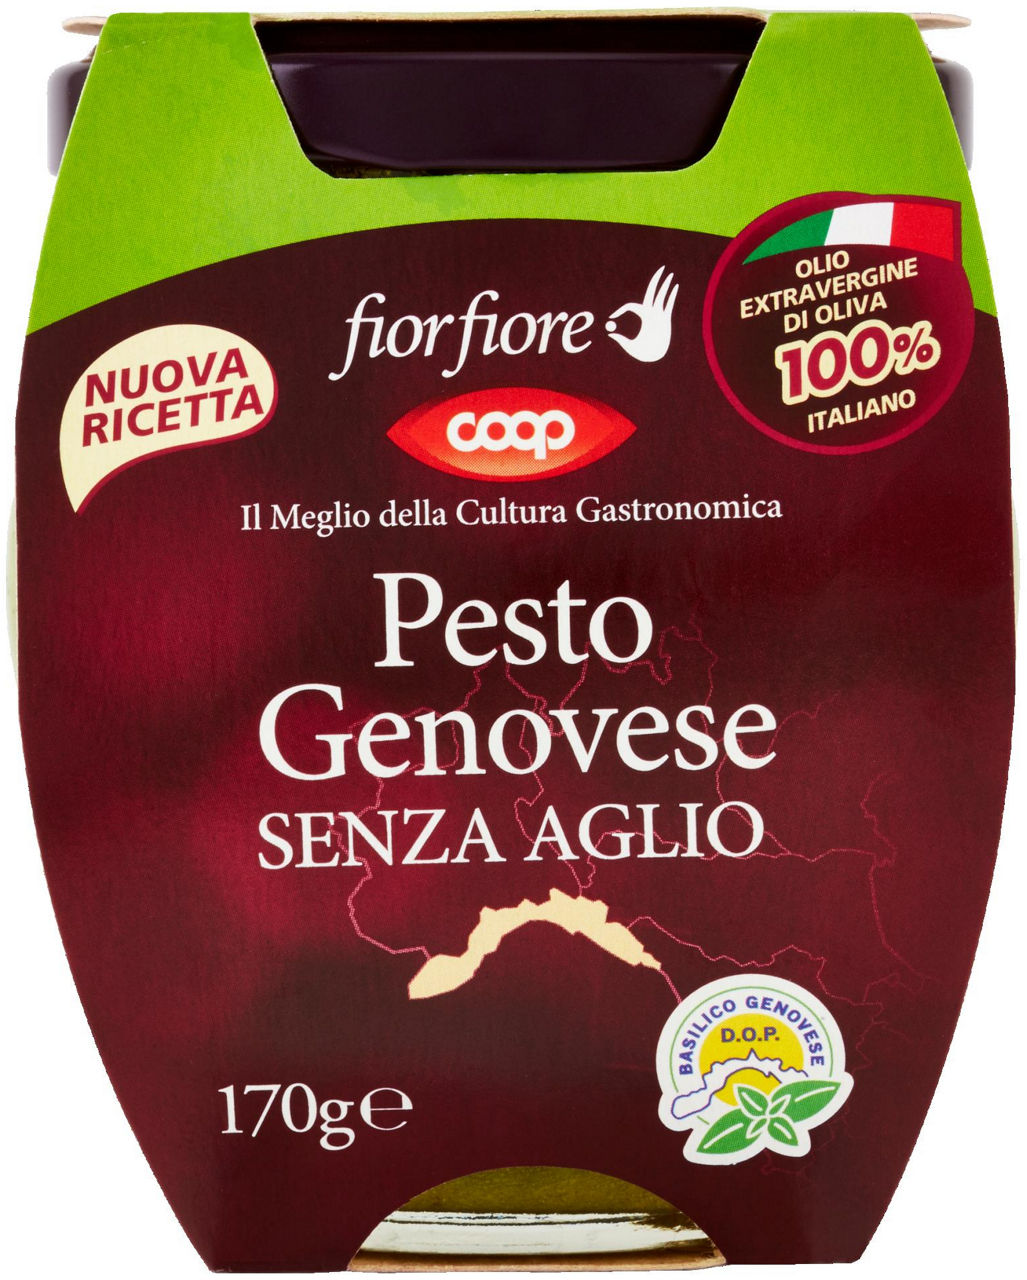 Pesto genovese fior fiore coop senza aglio vasetto vetro g 170